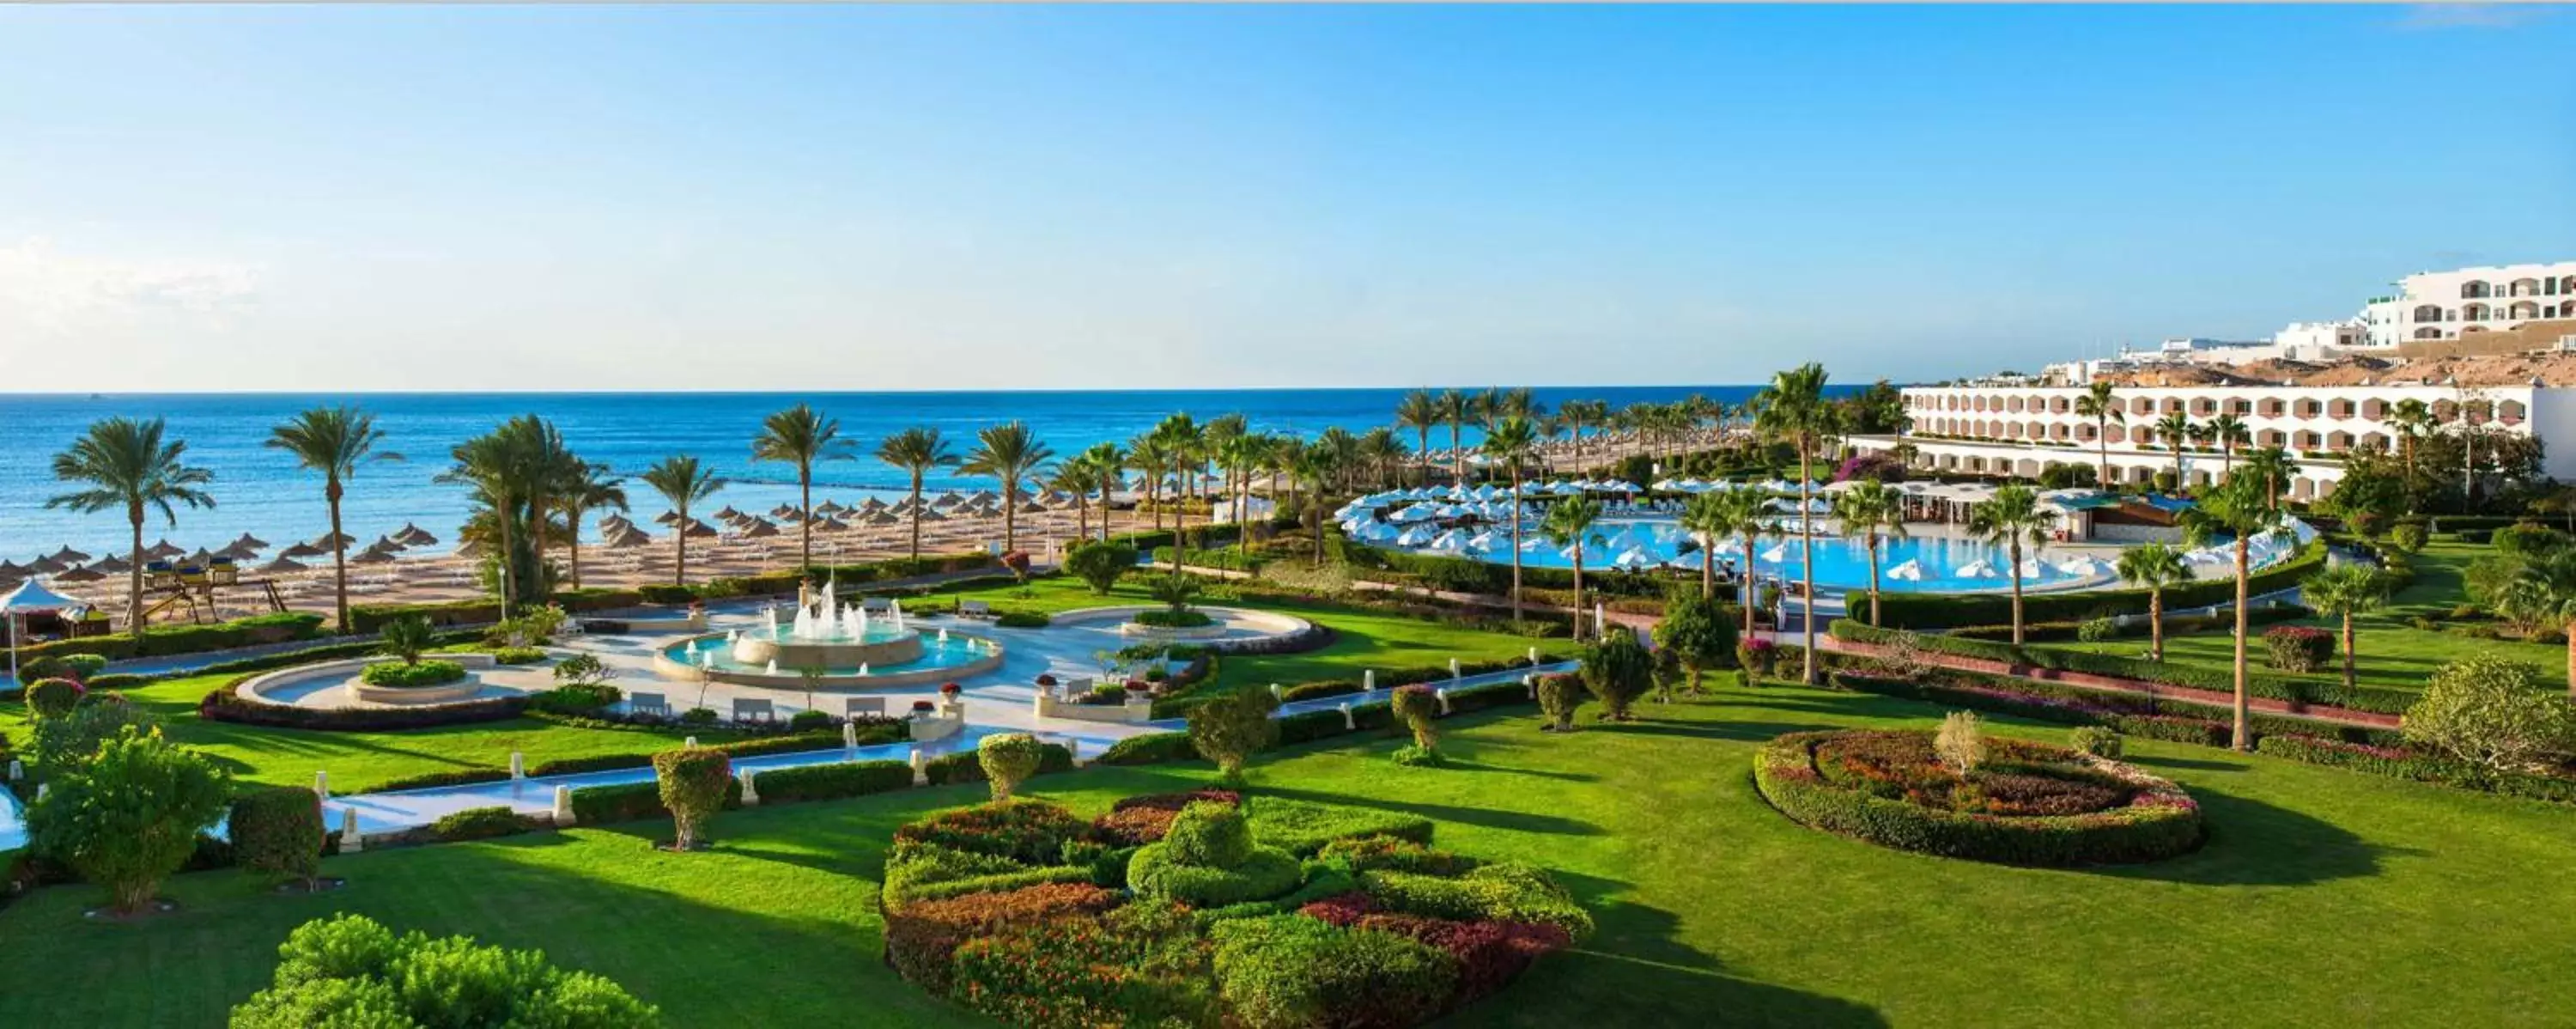 Garden, Bird's-eye View in Baron Resort Sharm El Sheikh